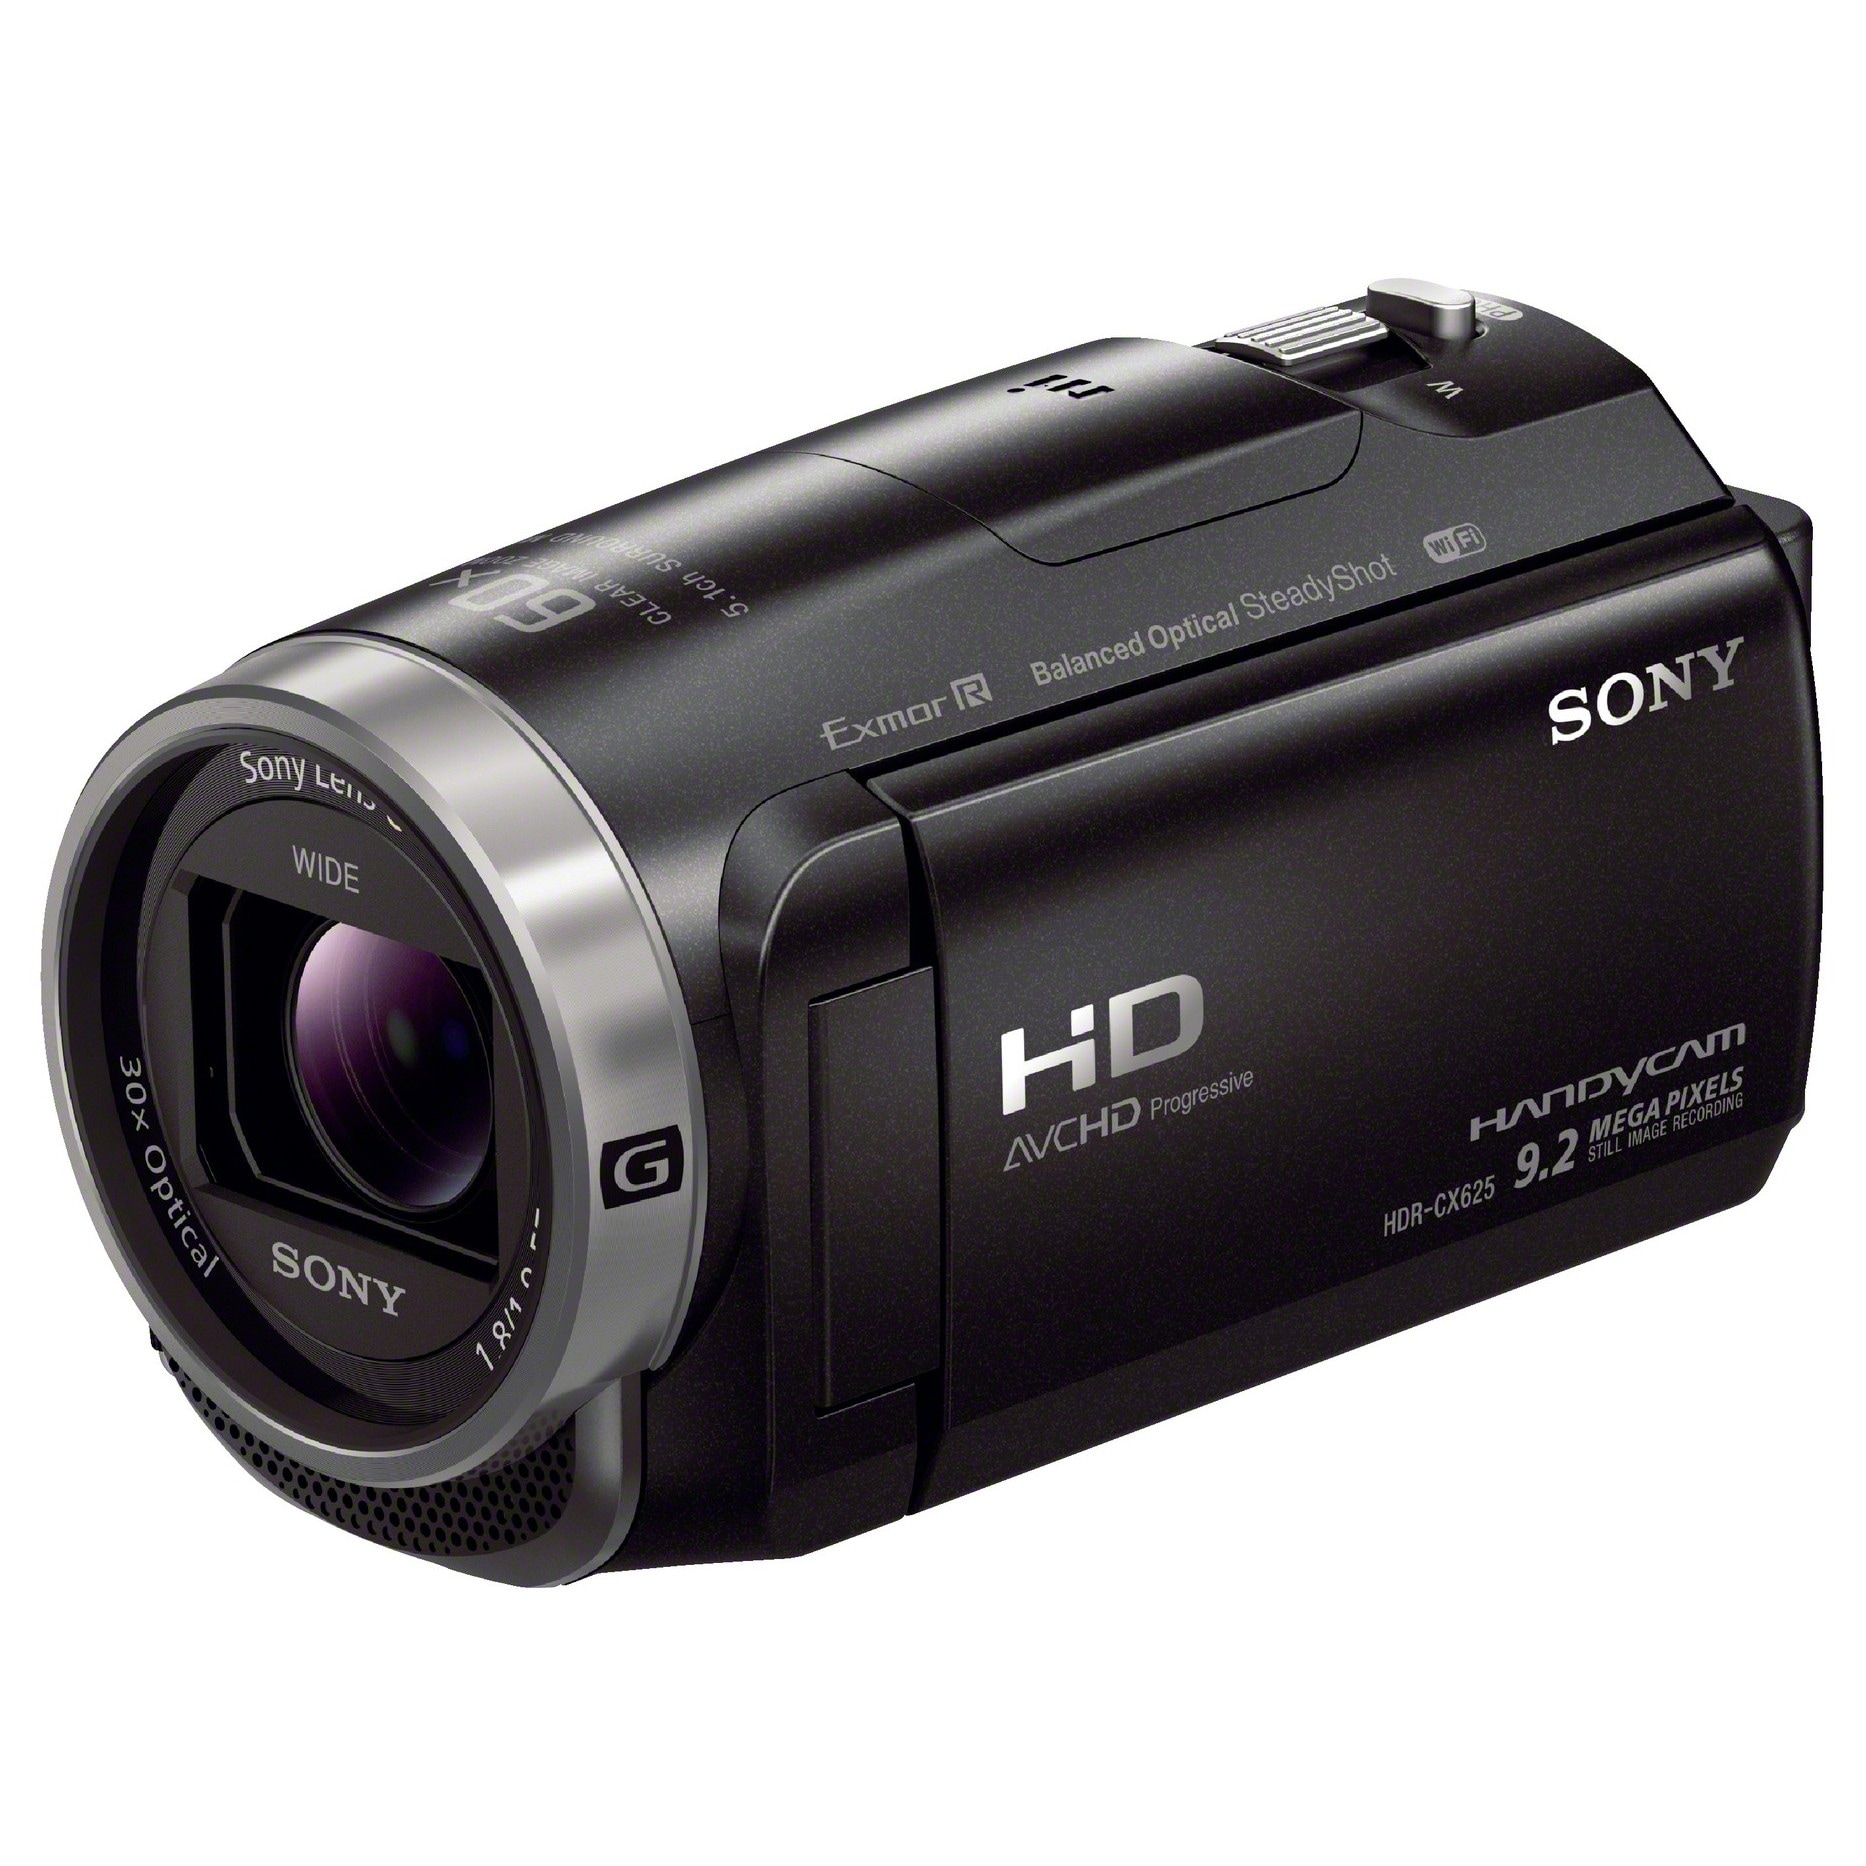 sæt at klemme afvisning Sony HDR-CX625 videokamera | Elgiganten